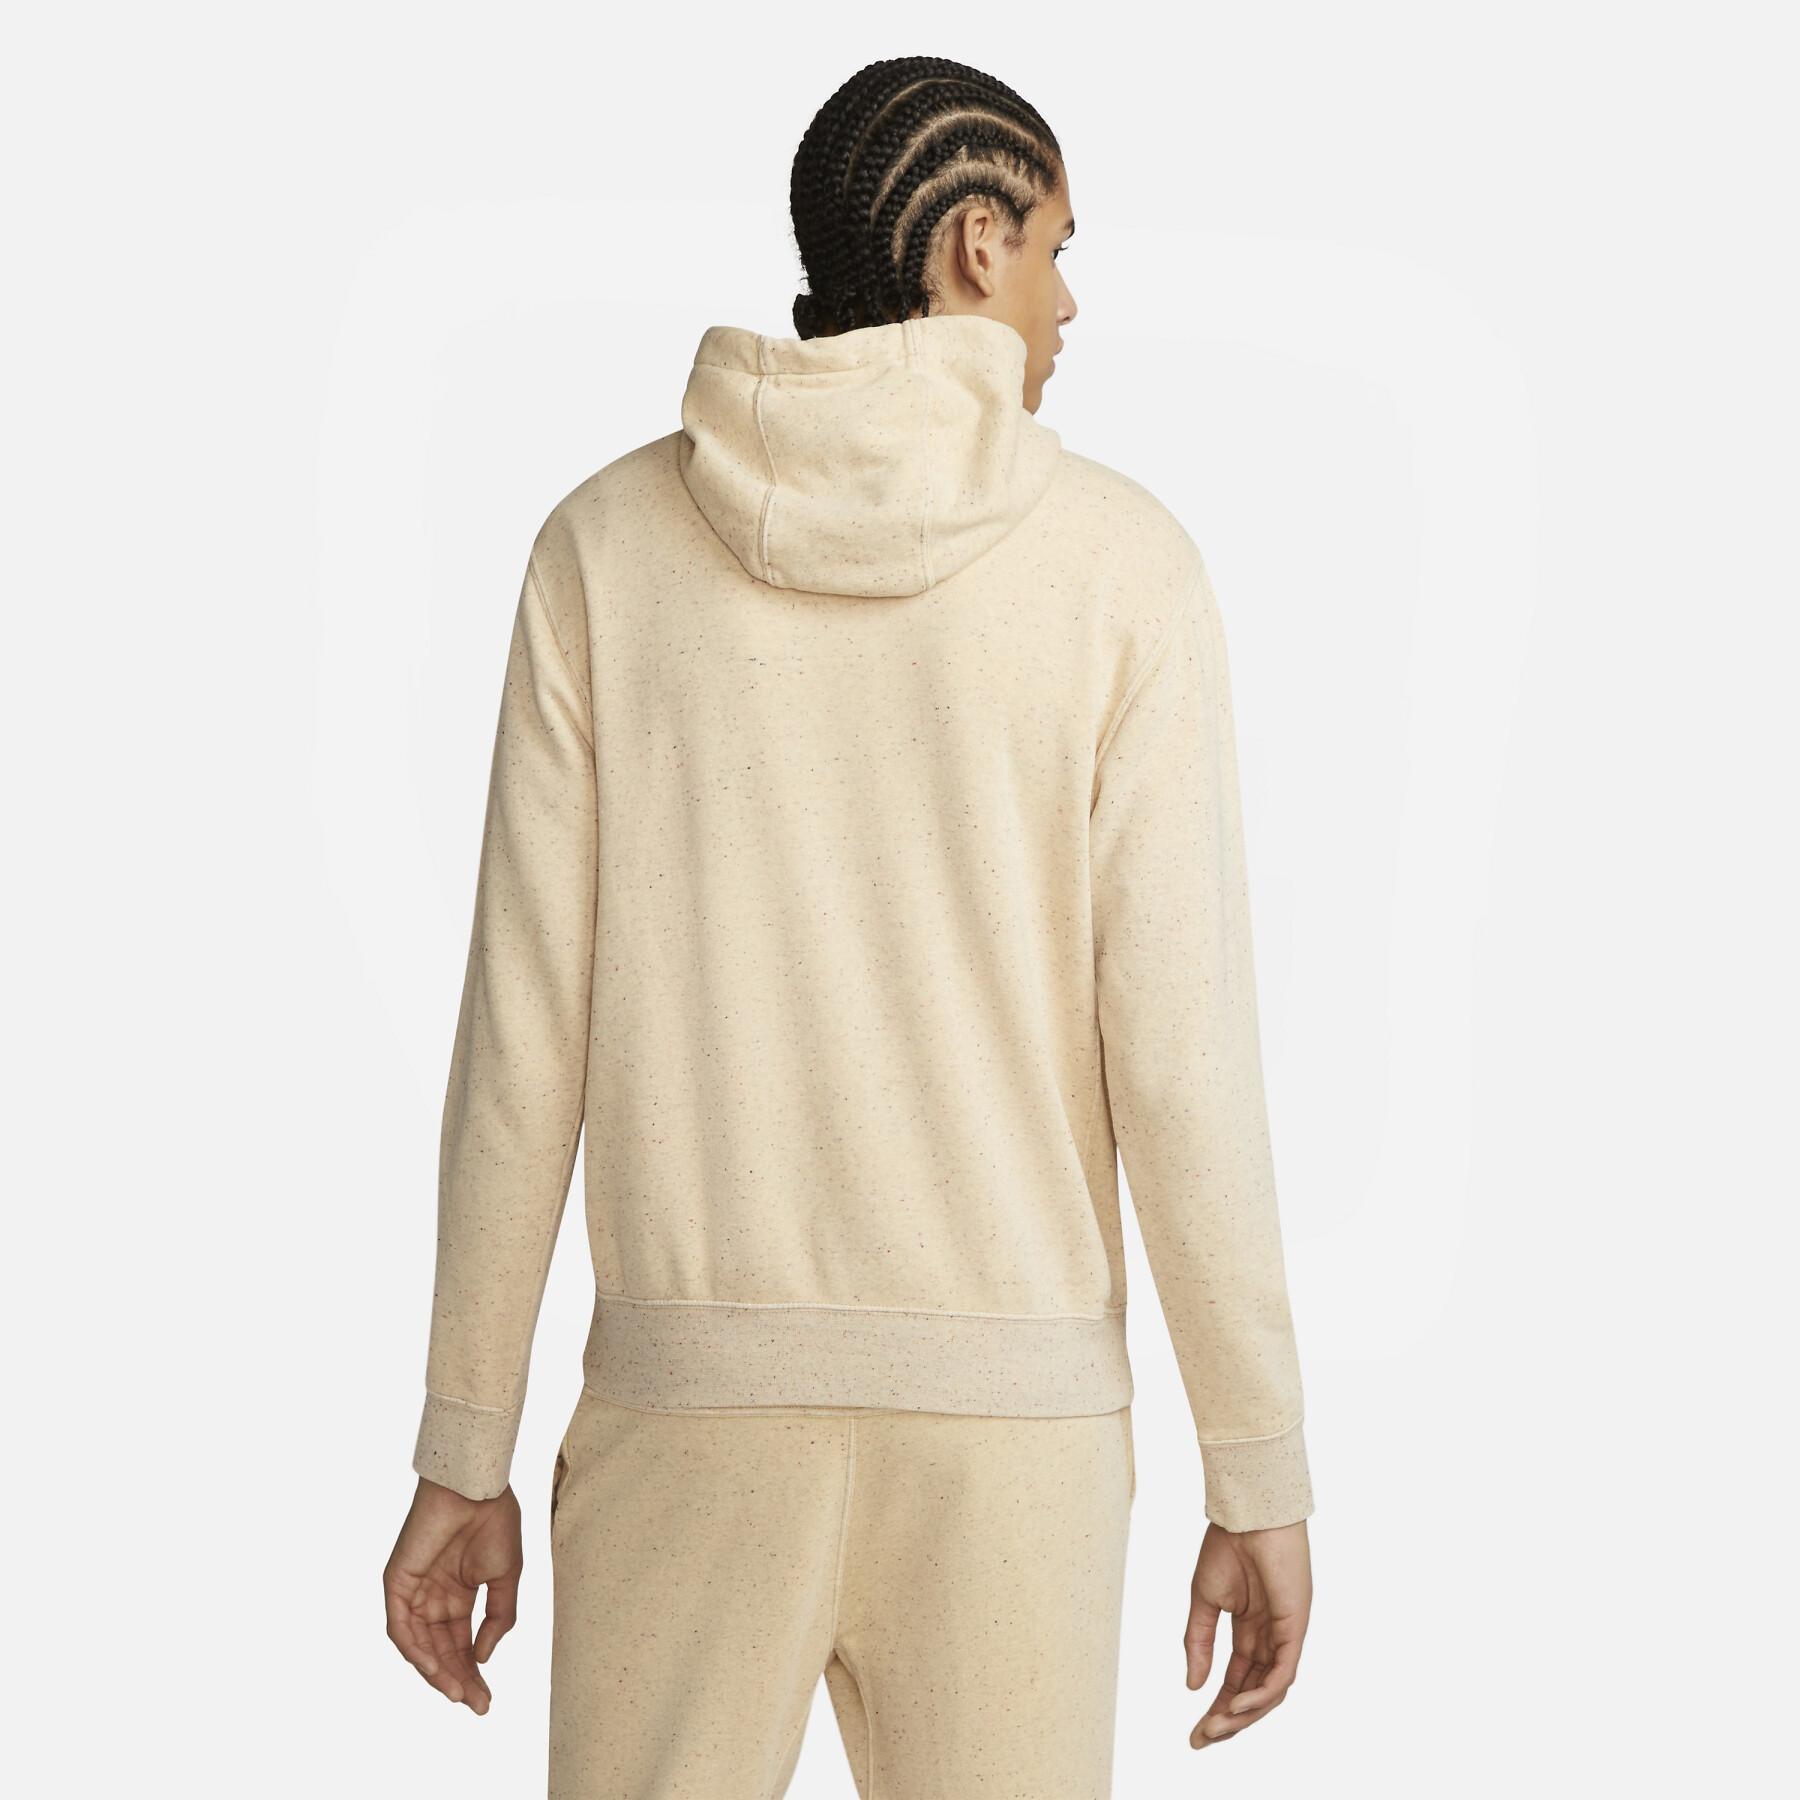 Sweatshirt con capucha Nike Club+ PO Revival